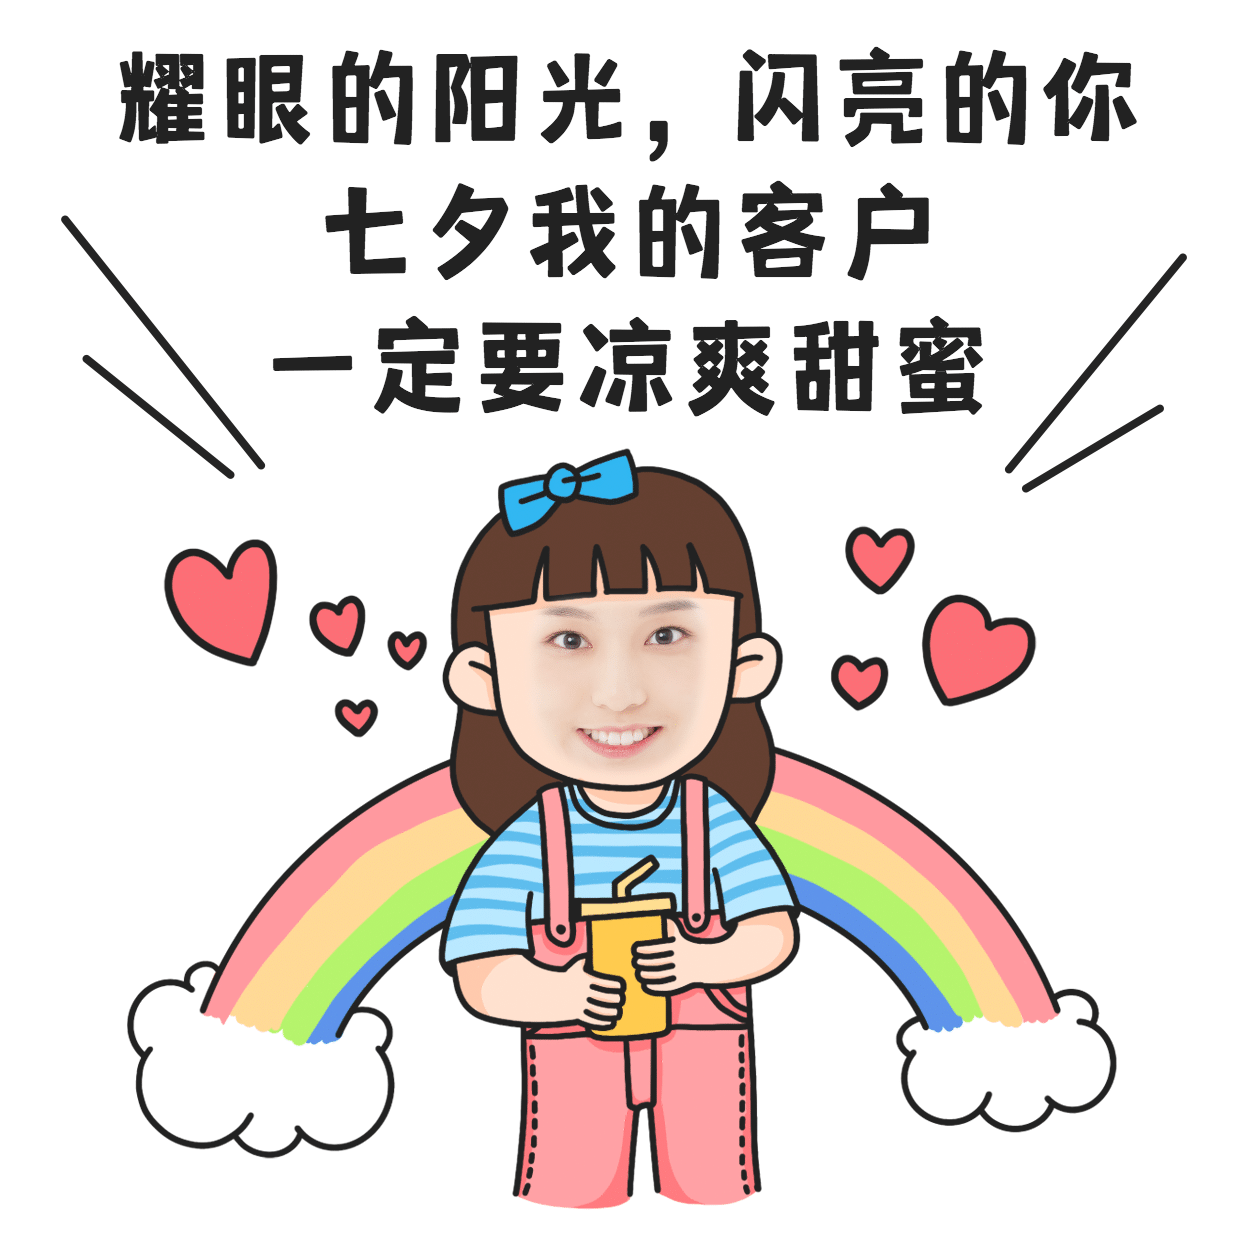 七夕创意玩法祝福手绘彩虹爱心表情包